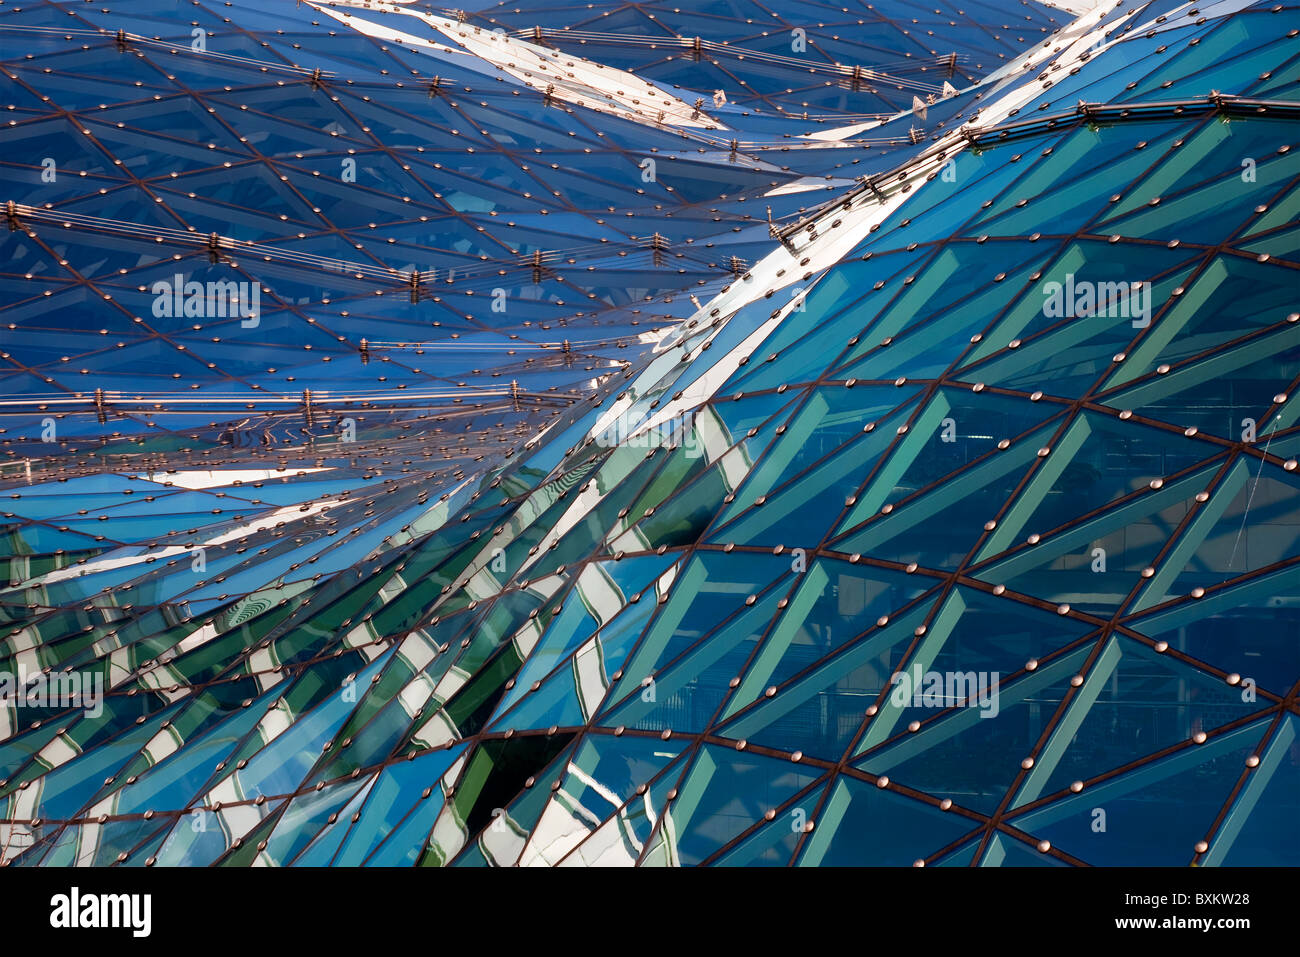 Toit en verre abstract architecture moderne Banque D'Images